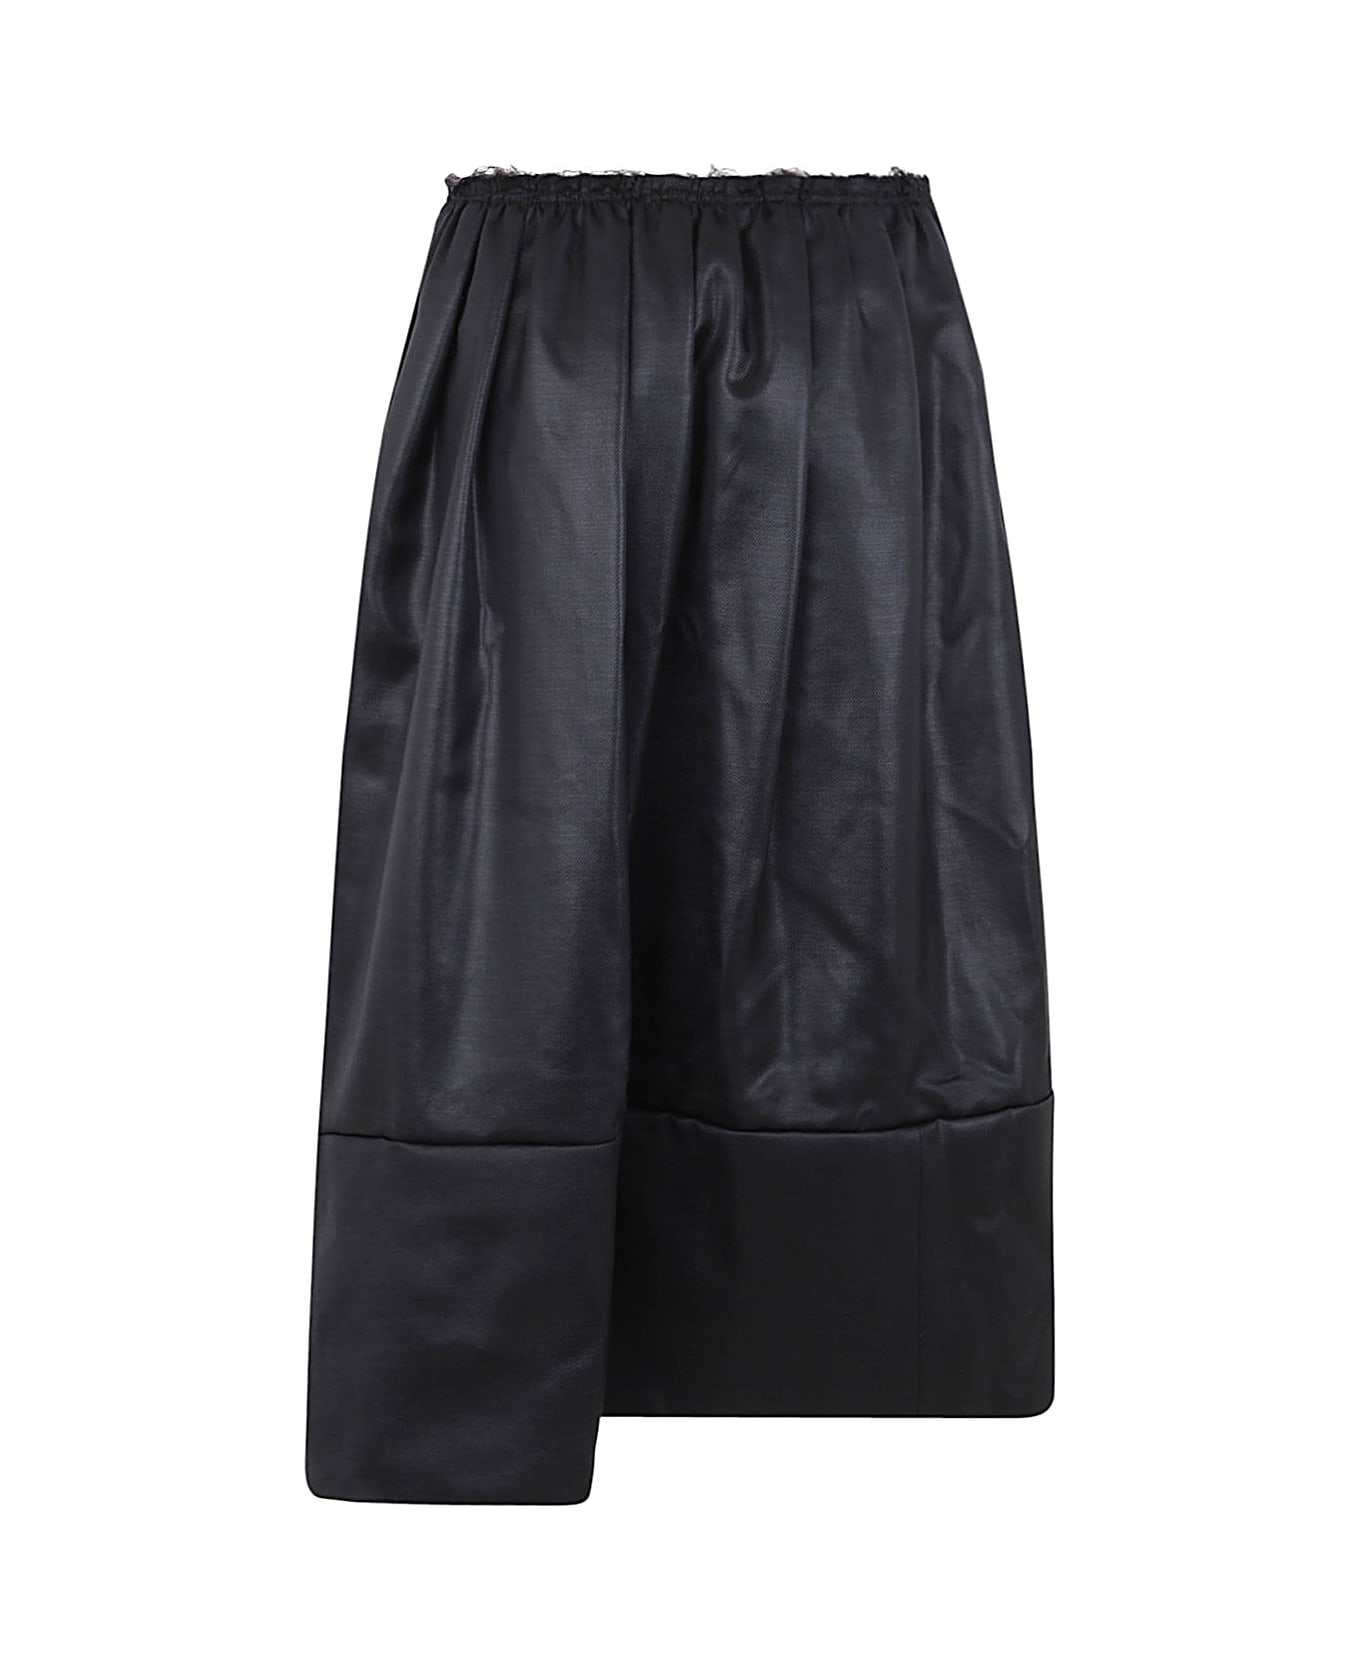 Comme des Garçons Comme des Garçons Ladies Skirt - Black スカート